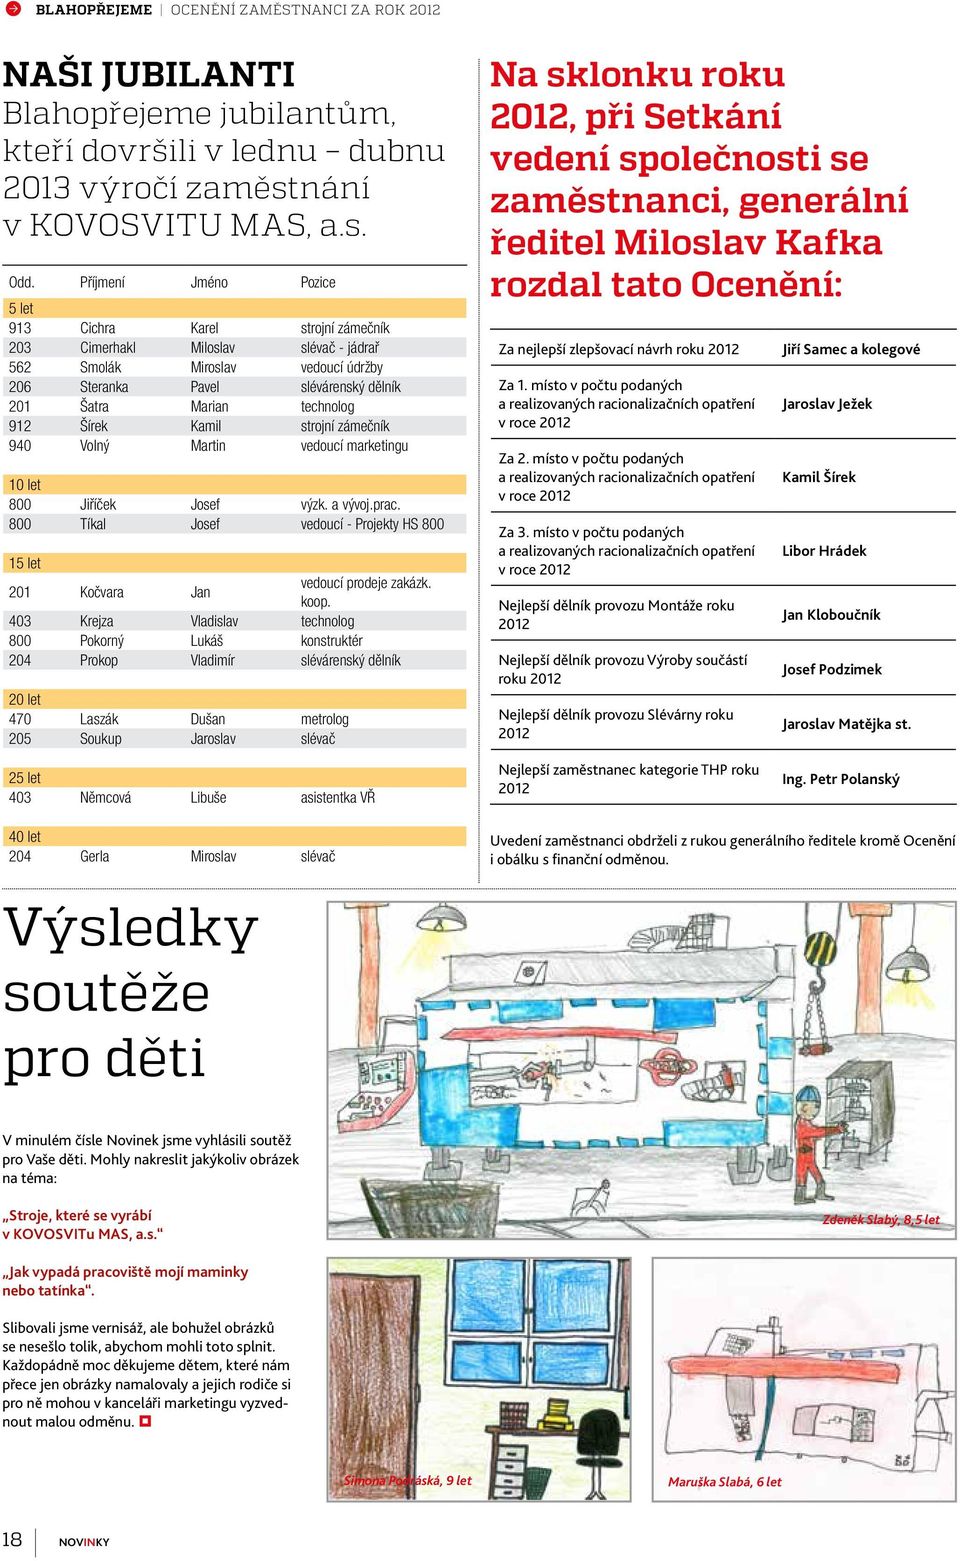 technolog 912 Šírek Kamil strojní zámečník 940 Volný Martin vedoucí marketingu 10 let 800 Jiříček Josef výzk. a vývoj.prac.